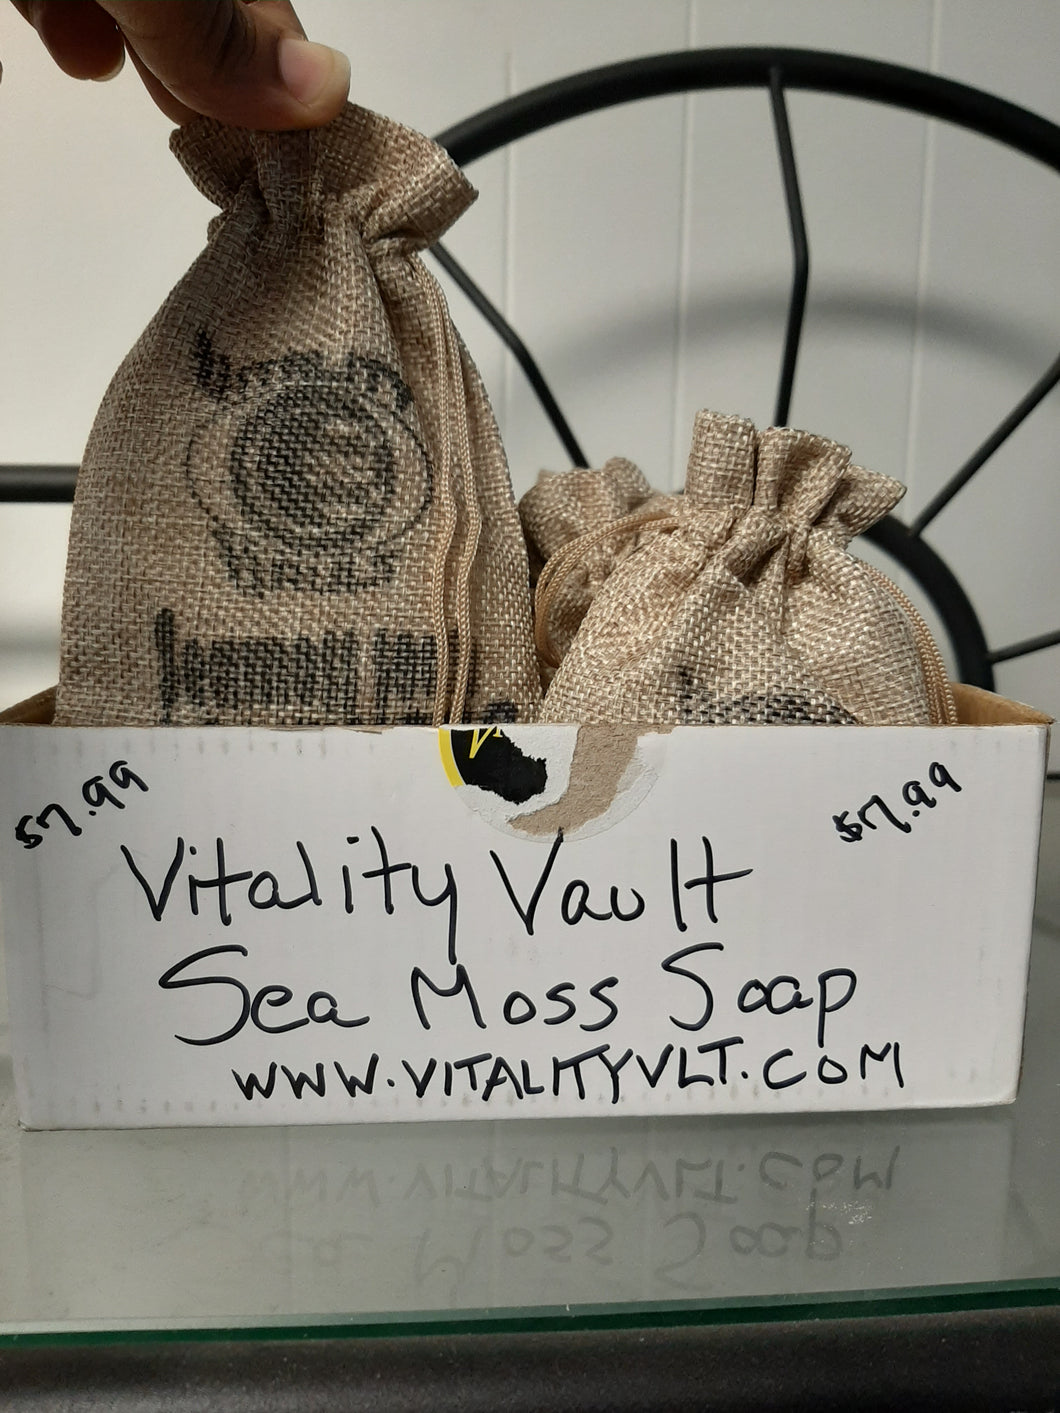 Sea Moss cb soap